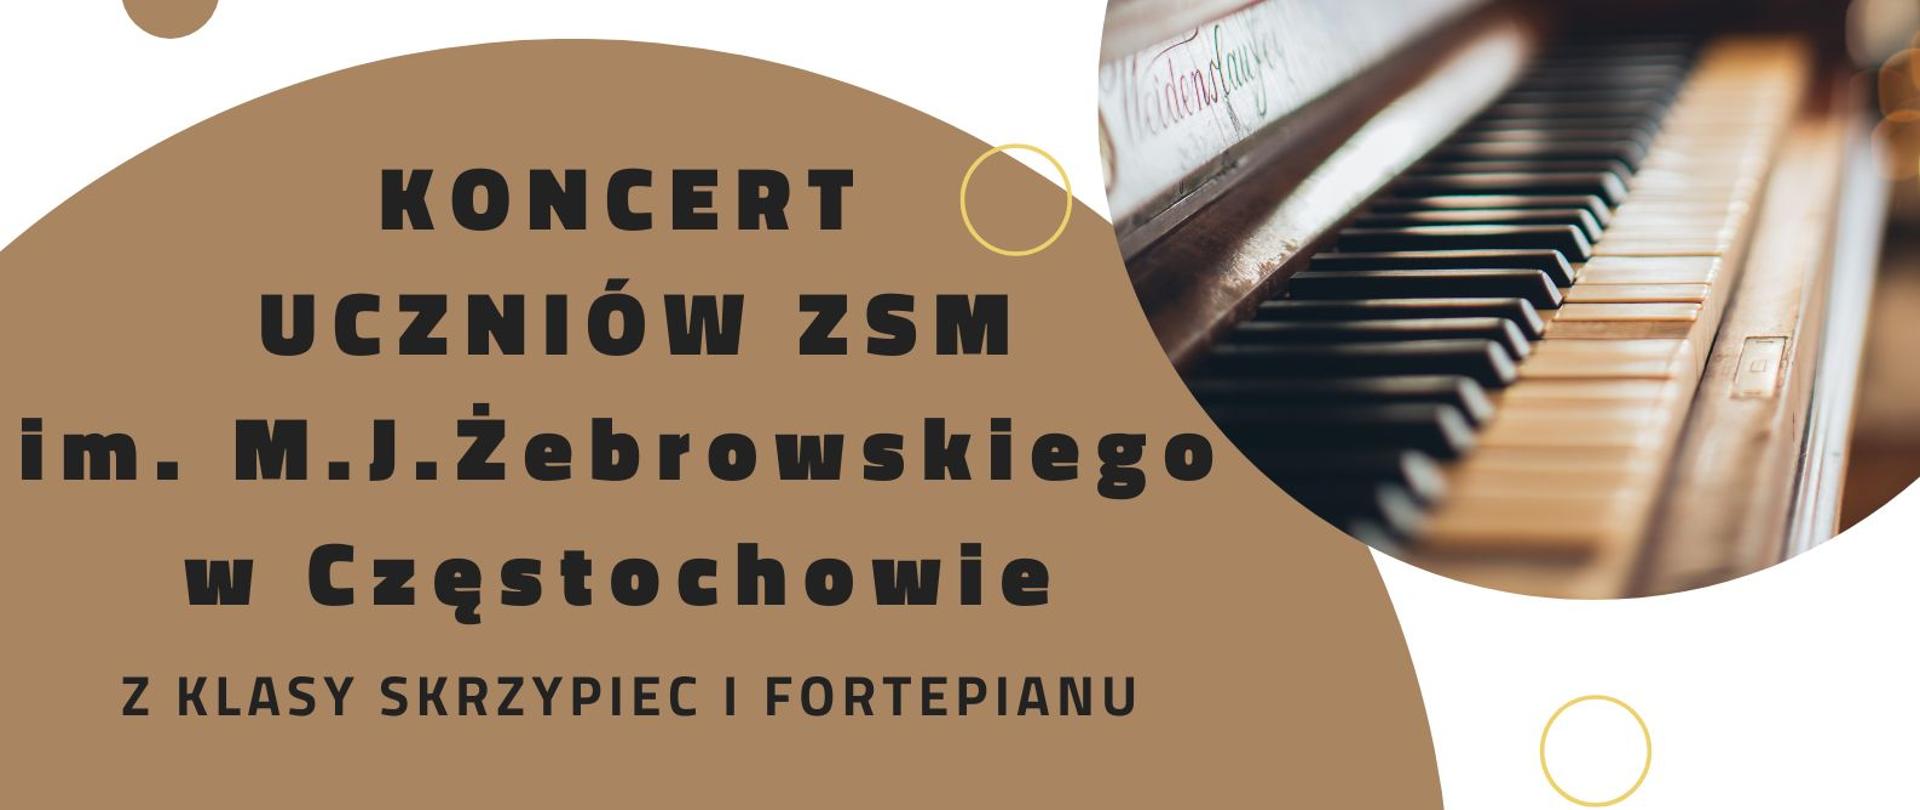 Plakat Koncert uczniów ZSM im. M.J.Żebrowskiego w Częstochowie